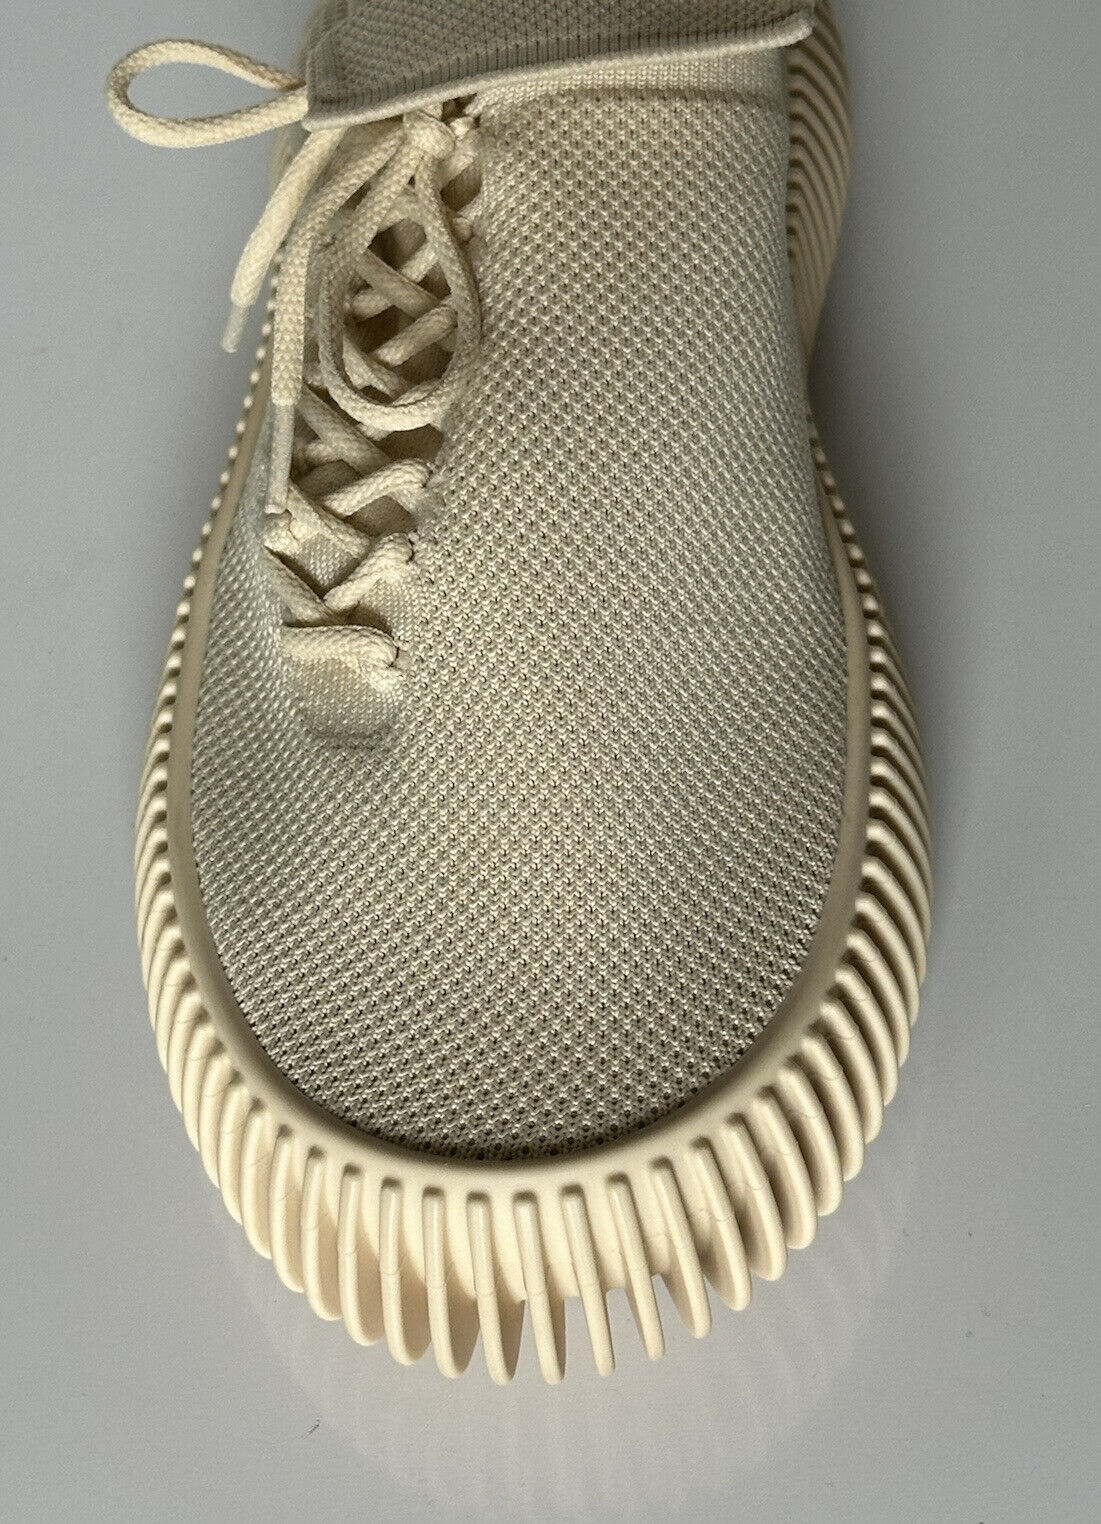 NIB 920 $ Bottega Veneta Tech Knit Cane Sugar Sneakers für Herren 10 US (43 Eu) 690112